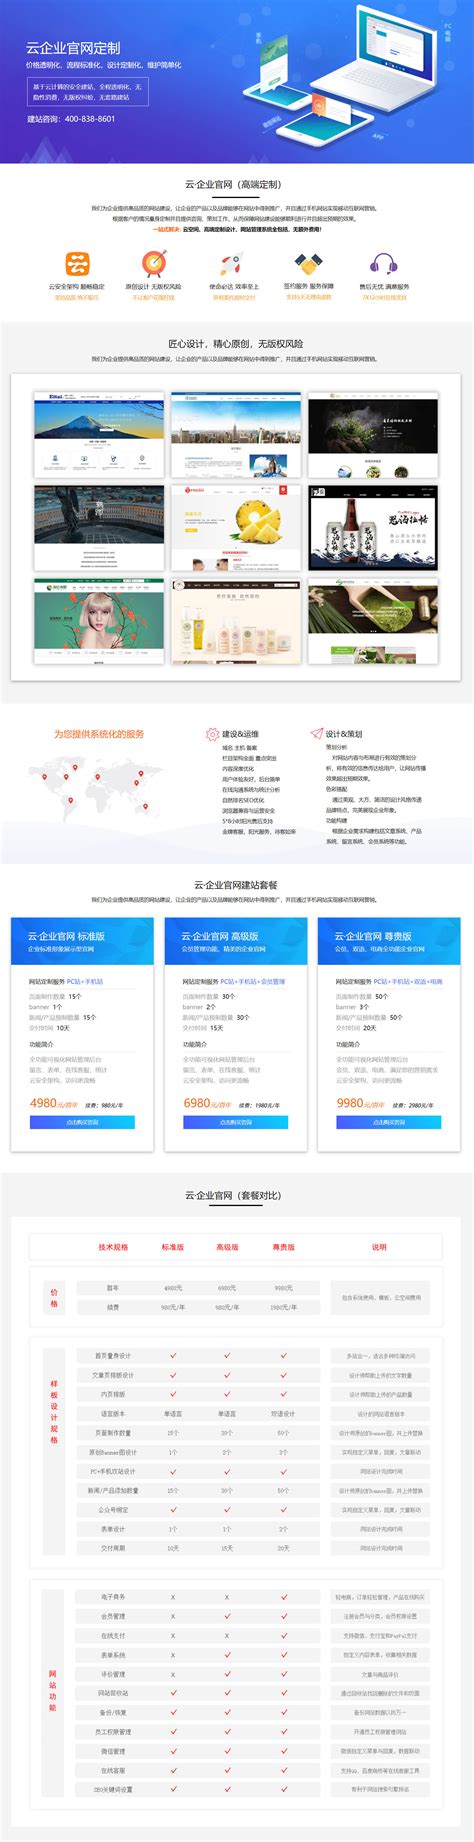 南京外贸网站建设策划方案